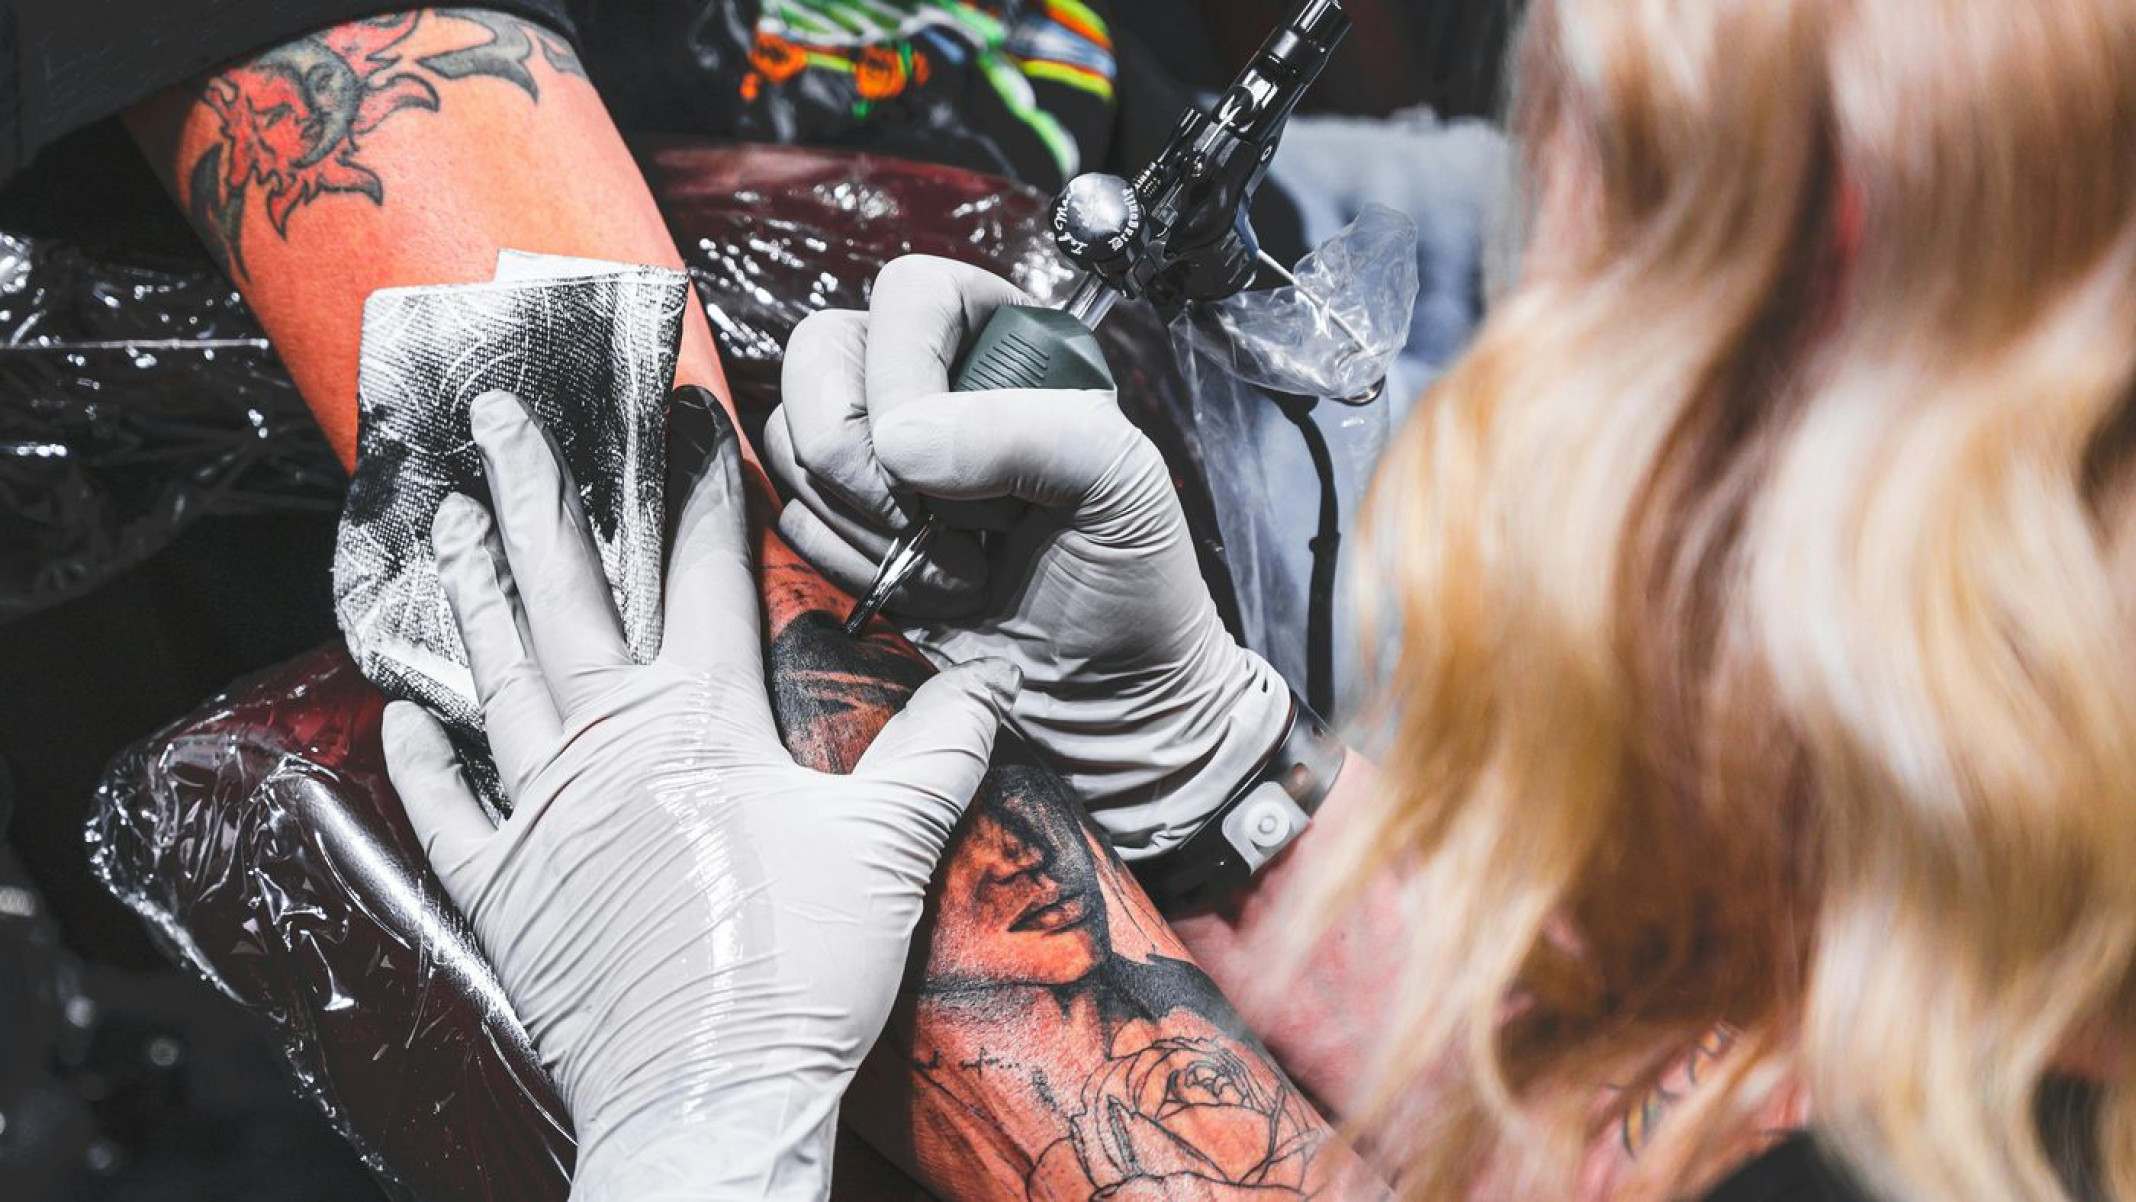 Bactérias infecciosas são detectadas em tintas para tatuagem